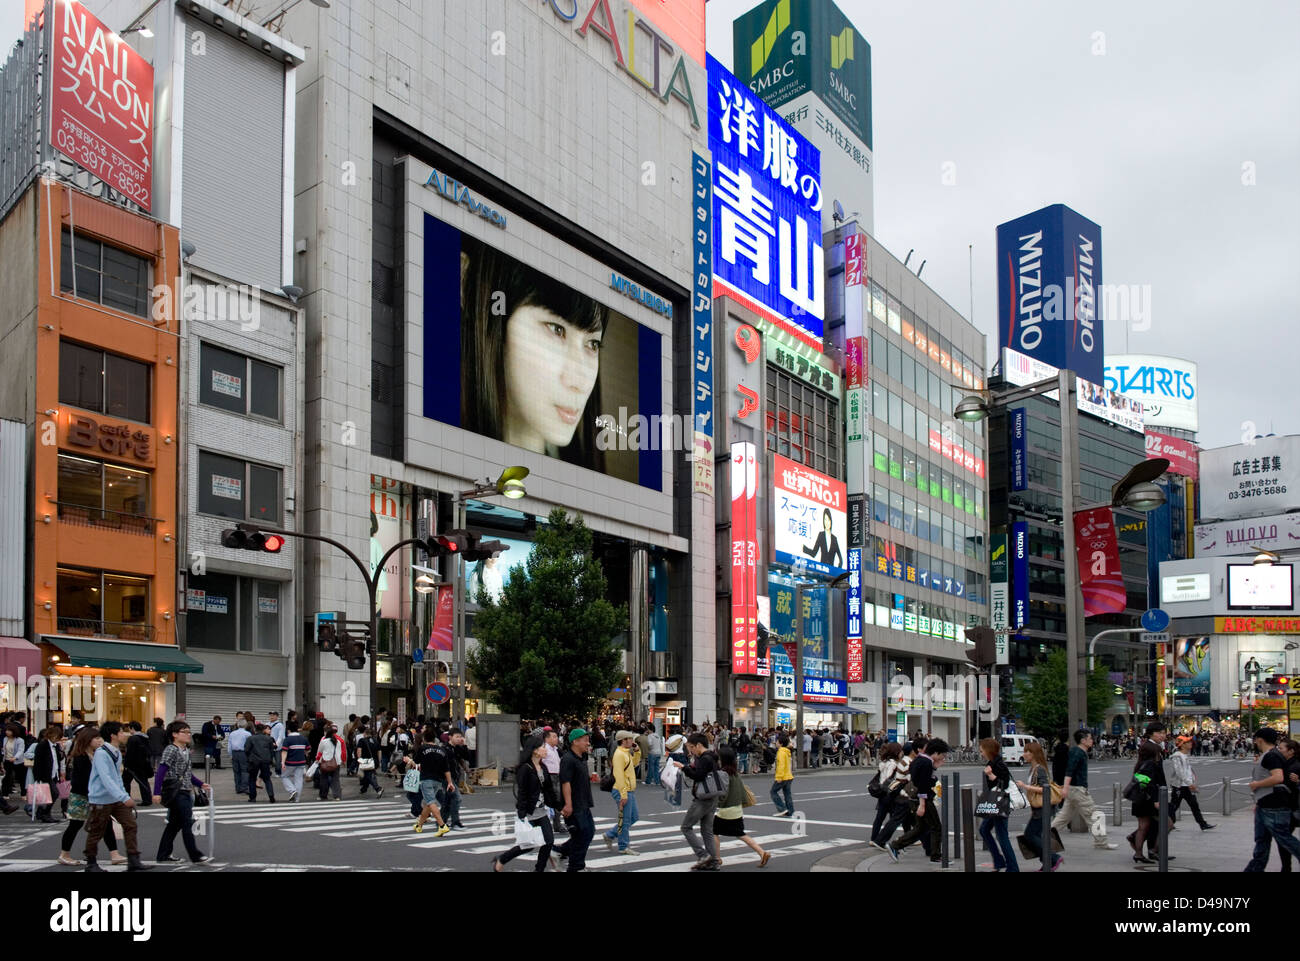 L'écran de télévision géant Alta Vision accueille les visiteurs au quartier des divertissements Kabukicho à Shinjuku, Tokyo, Japon Banque D'Images